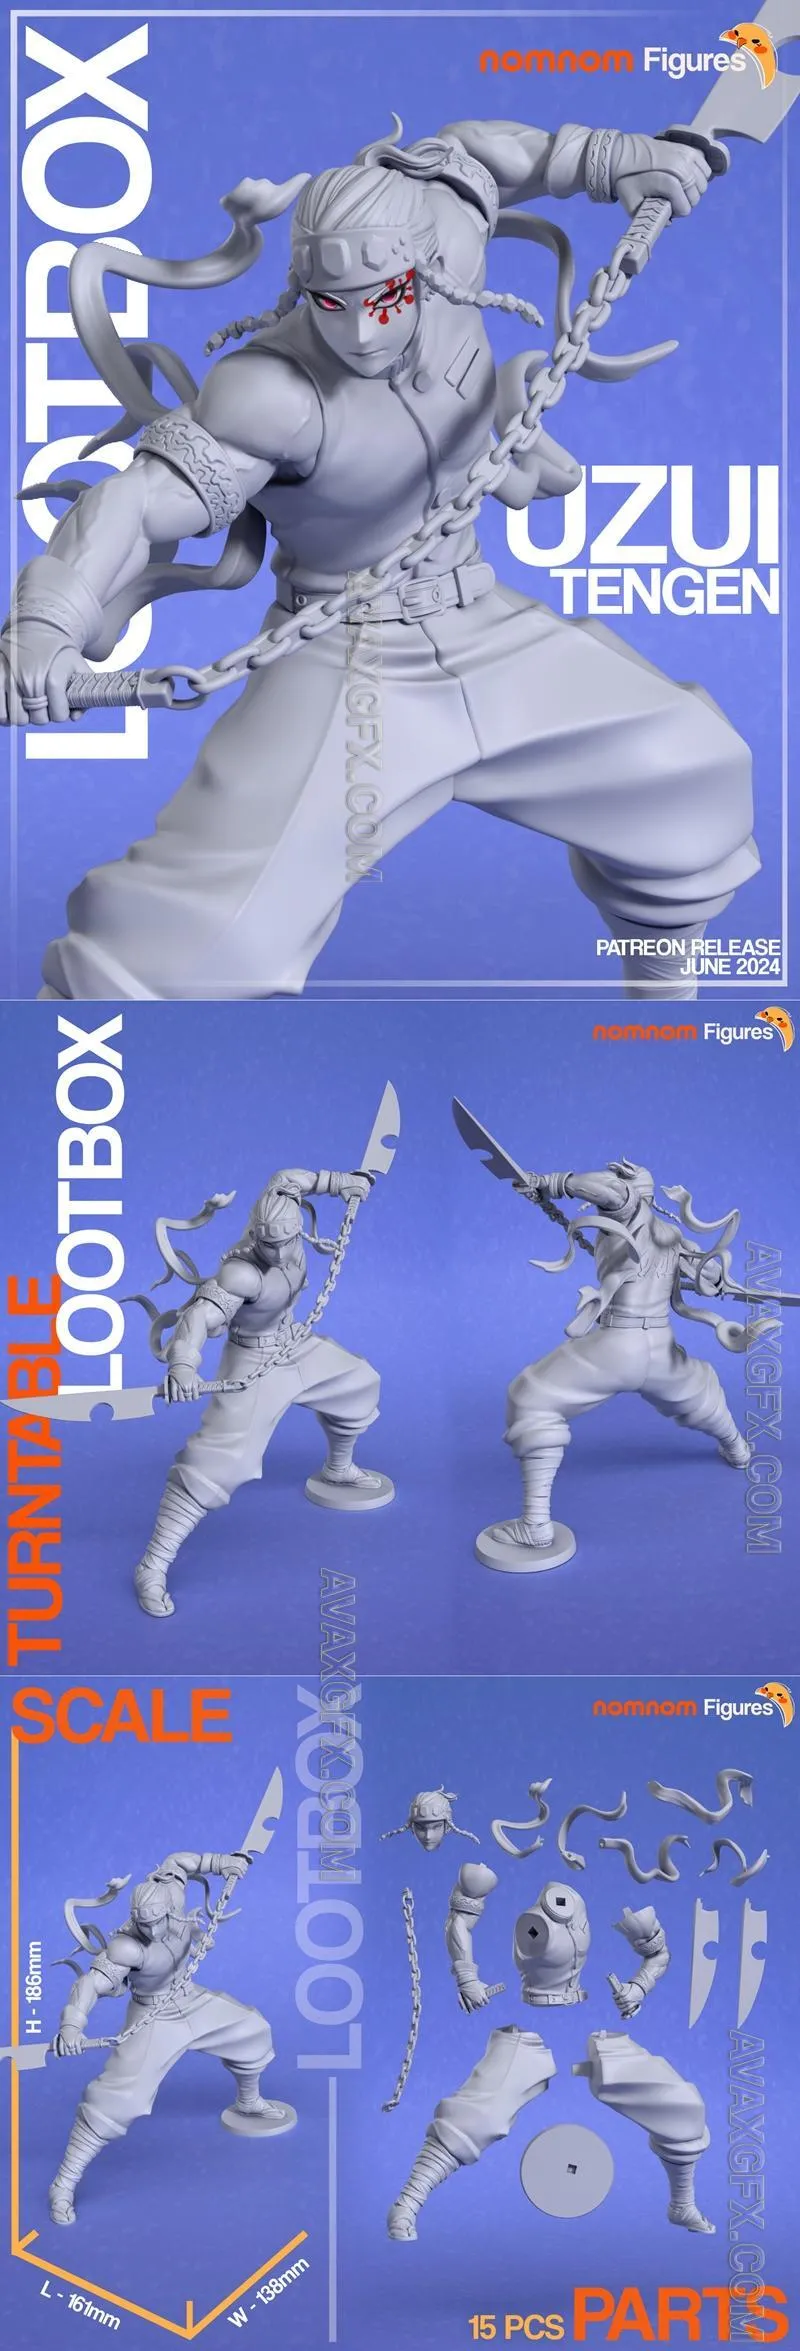 Nomnom Figures - LOOTBOX Uzui Tengen from Demon Slayer - STL 3D Model